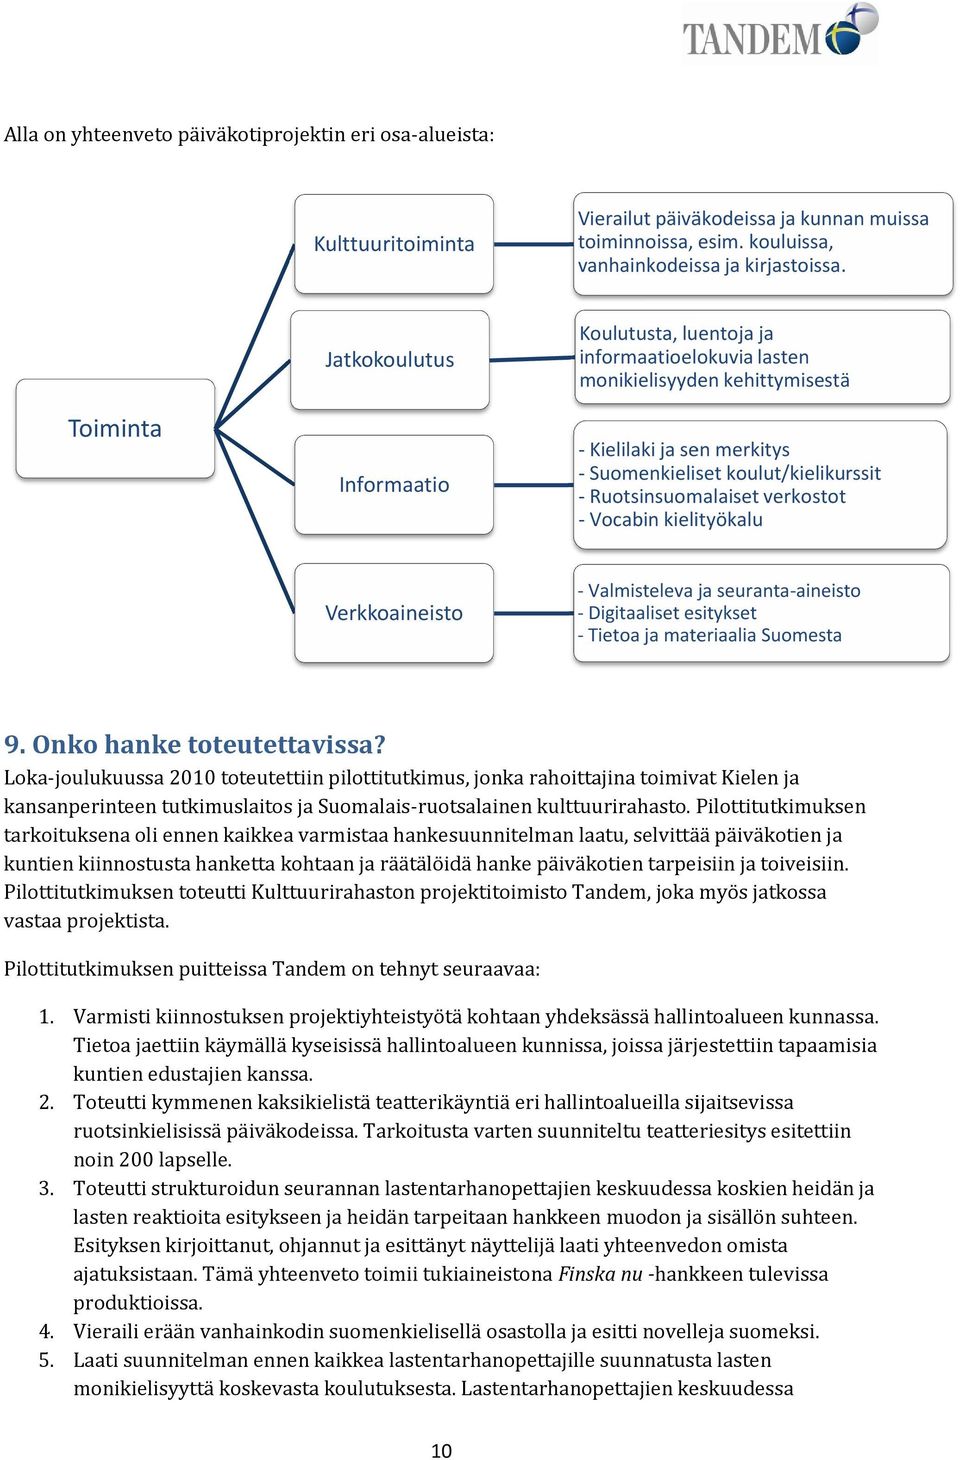 Ruotsinsuomalaiset verkostot - Vocabin kielityökalu Verkkoaineisto - Valmisteleva ja seuranta-aineisto - Digitaaliset esitykset - Tietoa ja materiaalia Suomesta 9. Onko hanke toteutettavissa?